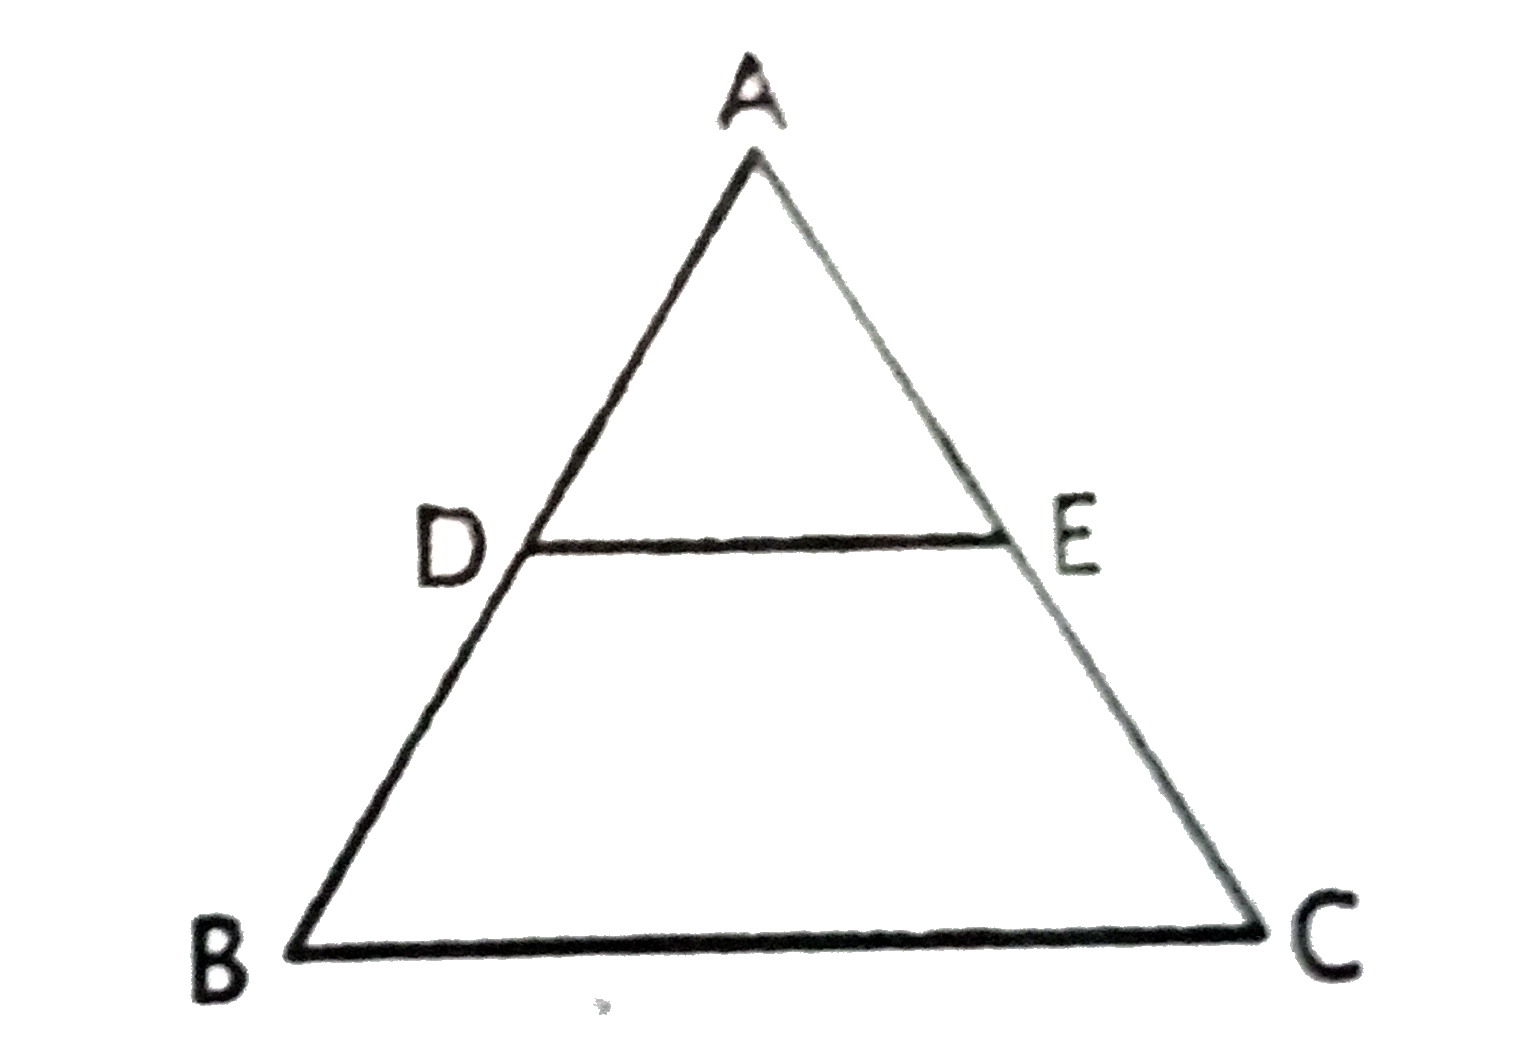 दिए गए चित्र में , DE||BC एवं (AD)/(DB)=(3)/(5). यदि AC=6.4 सेमी तो AE का मान है ।